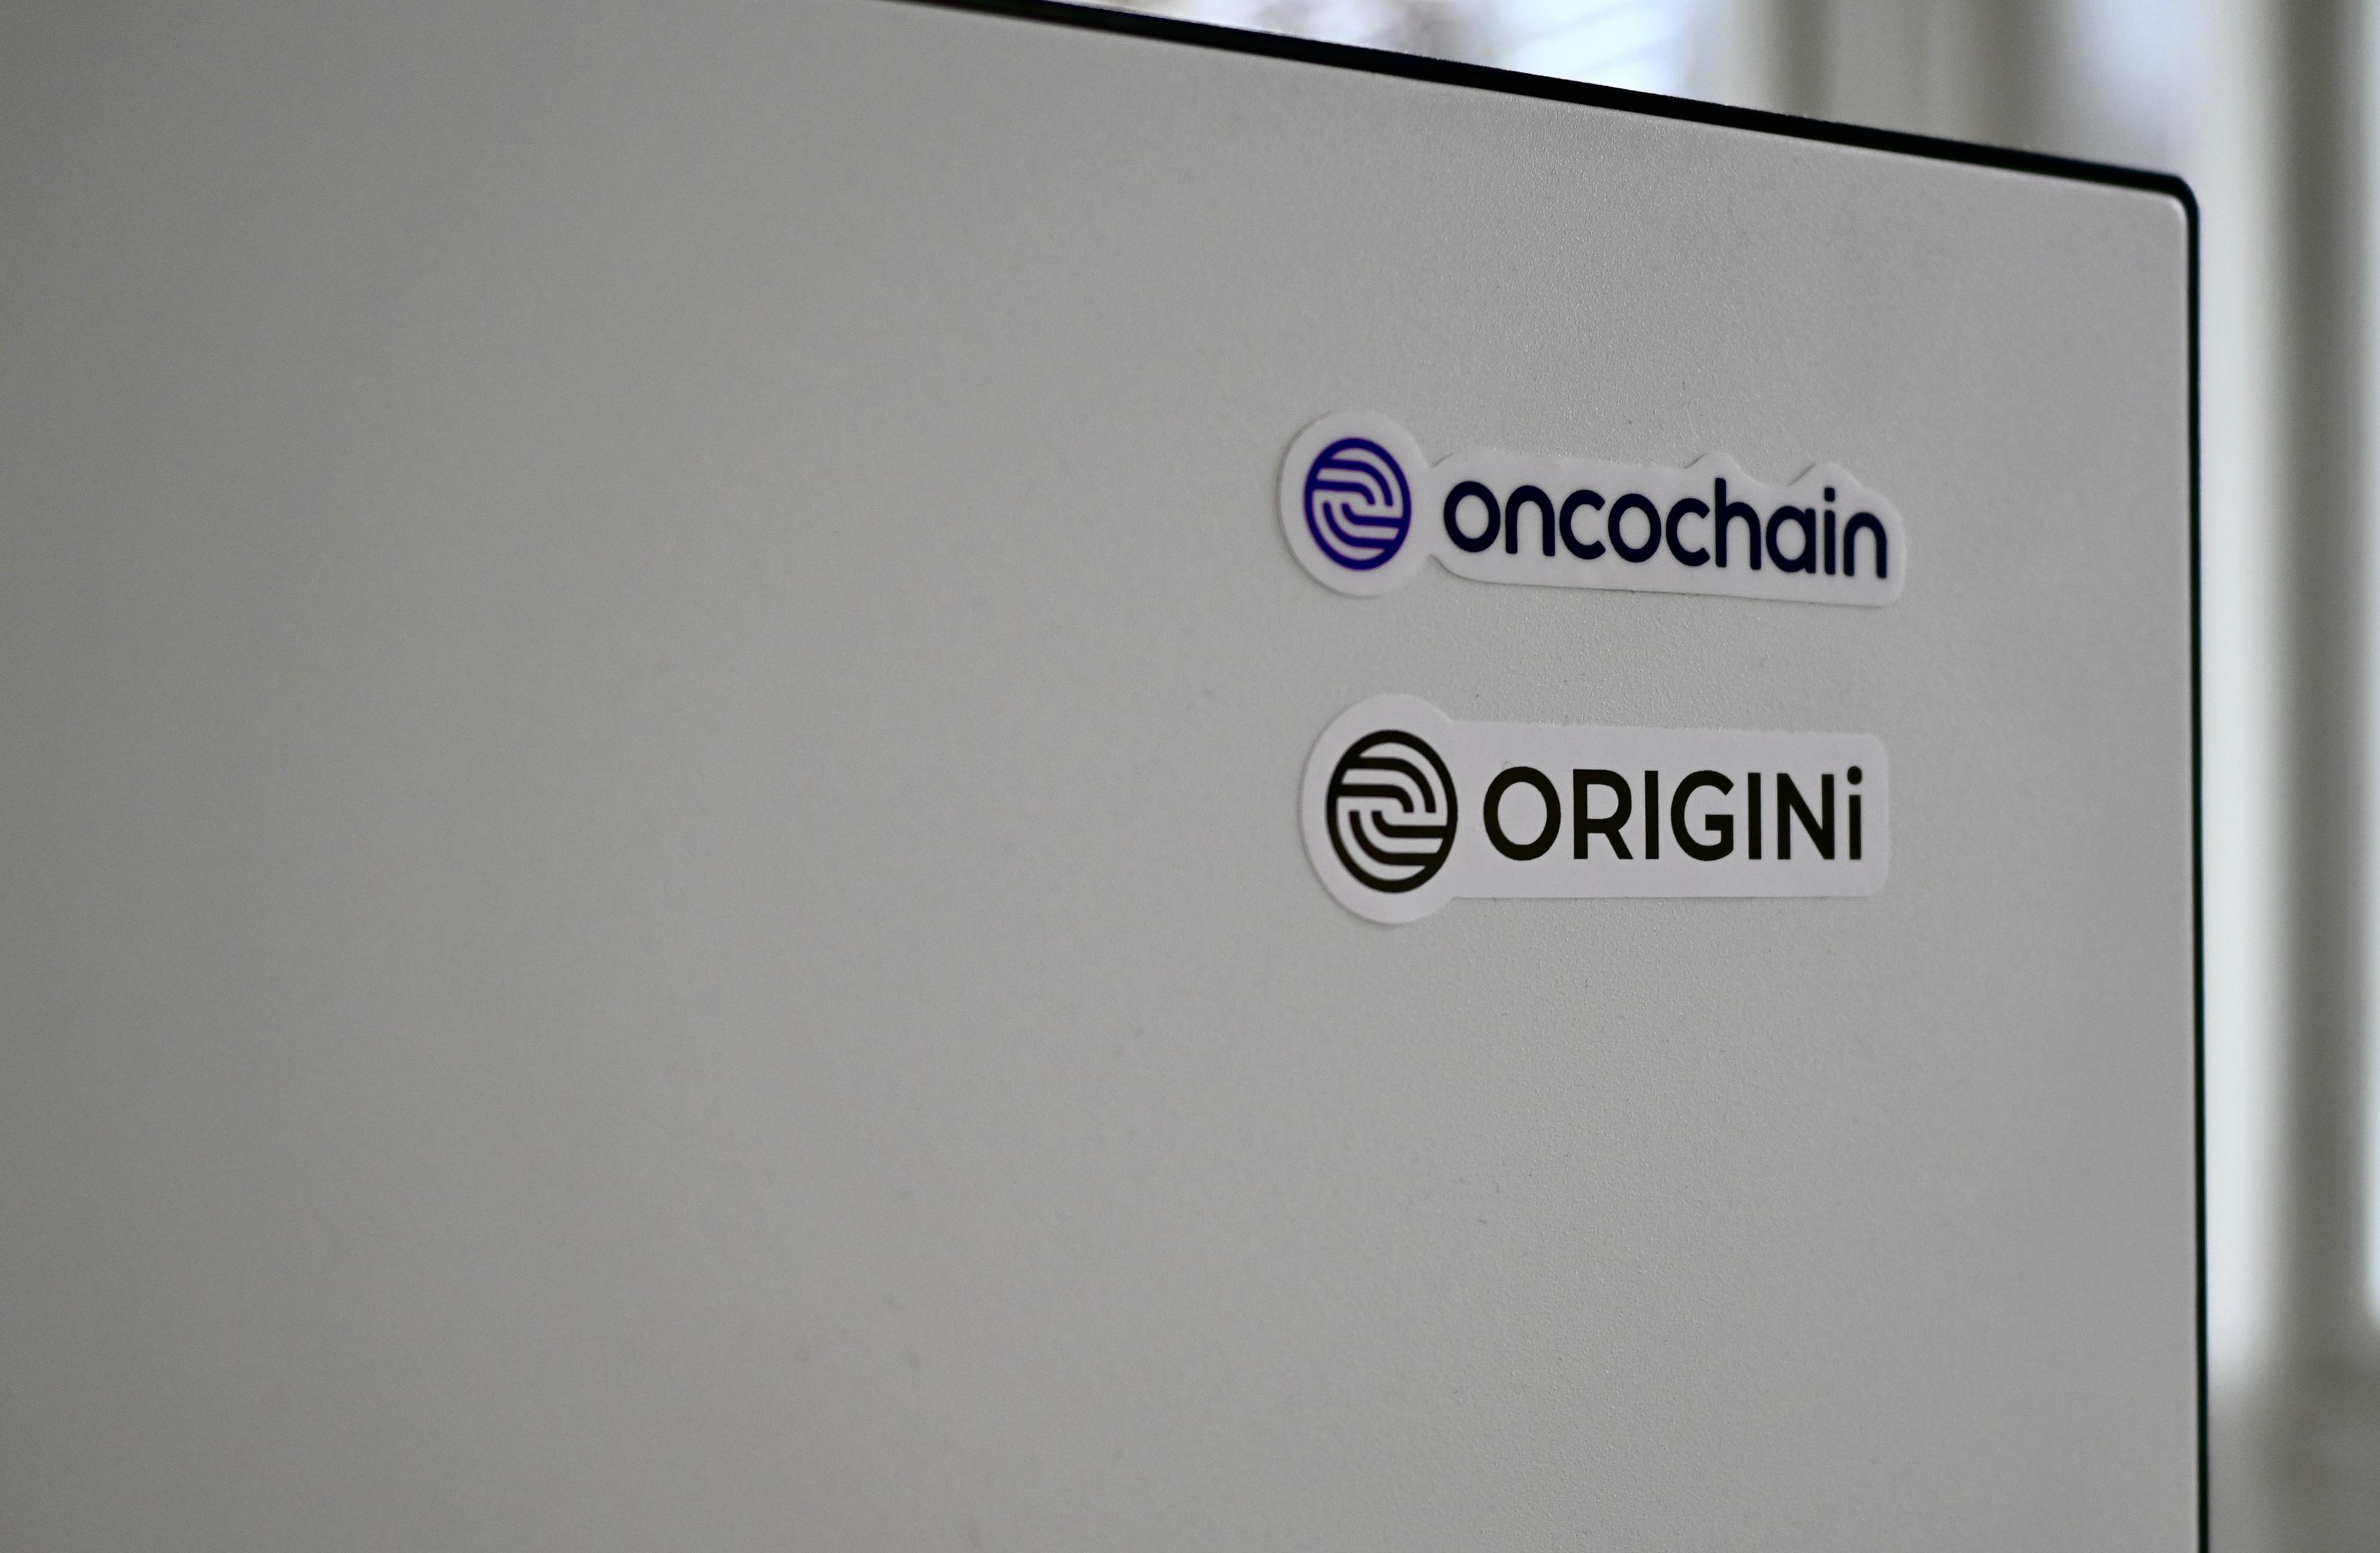 A picture of onochain/origini logo